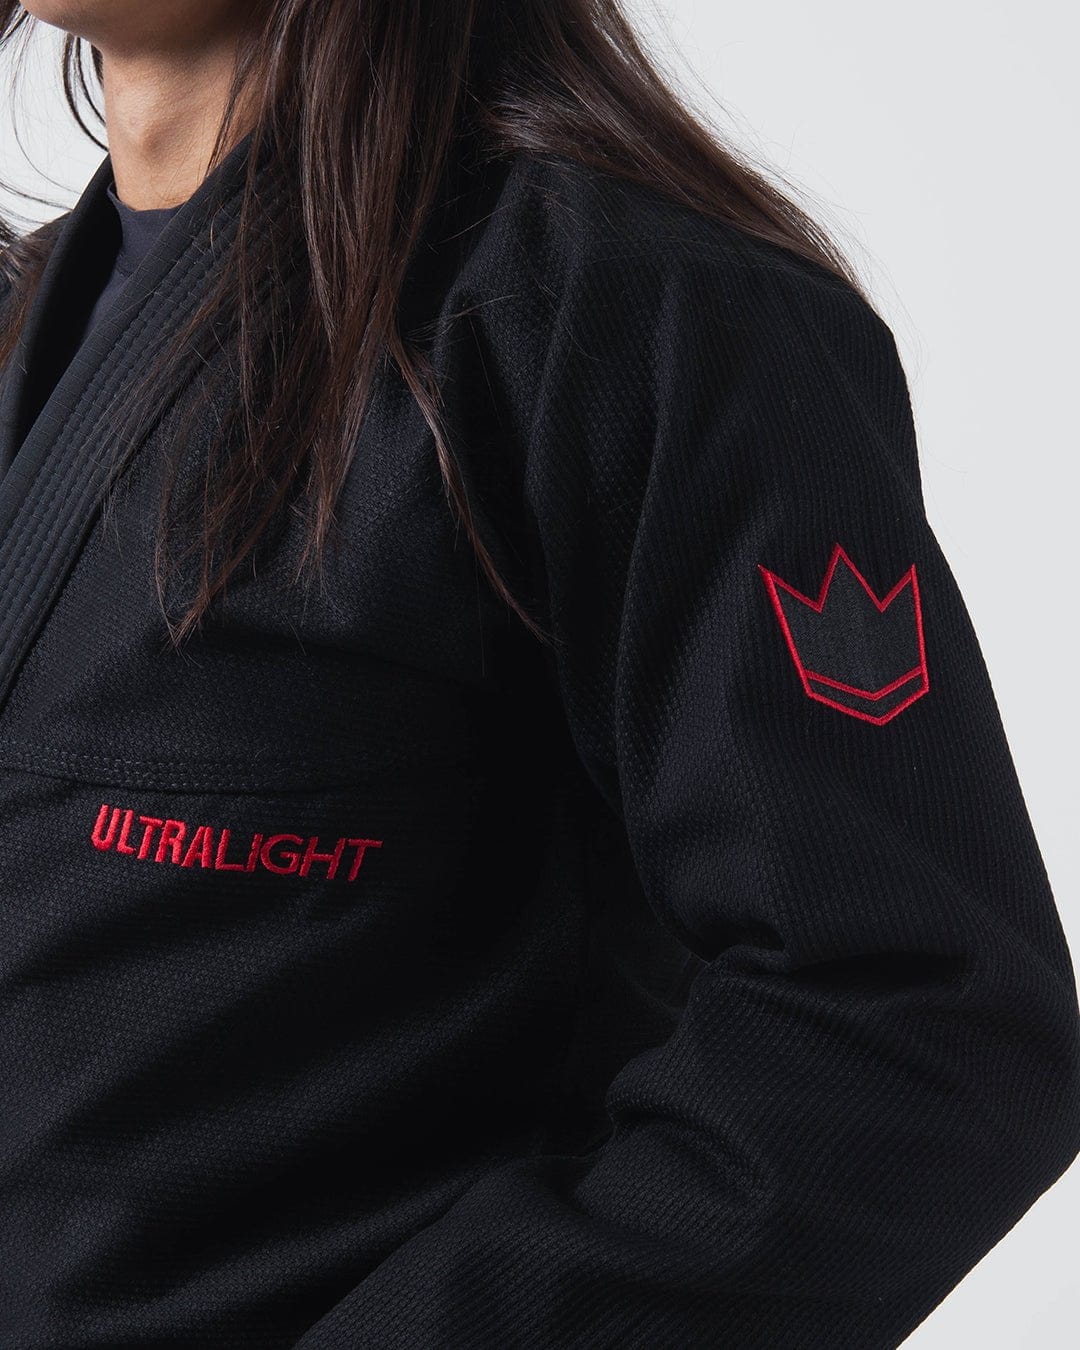 Gi de Jiu Jitsu Brésilien Kingz Ultralight 2.0 pour Femme - Noir